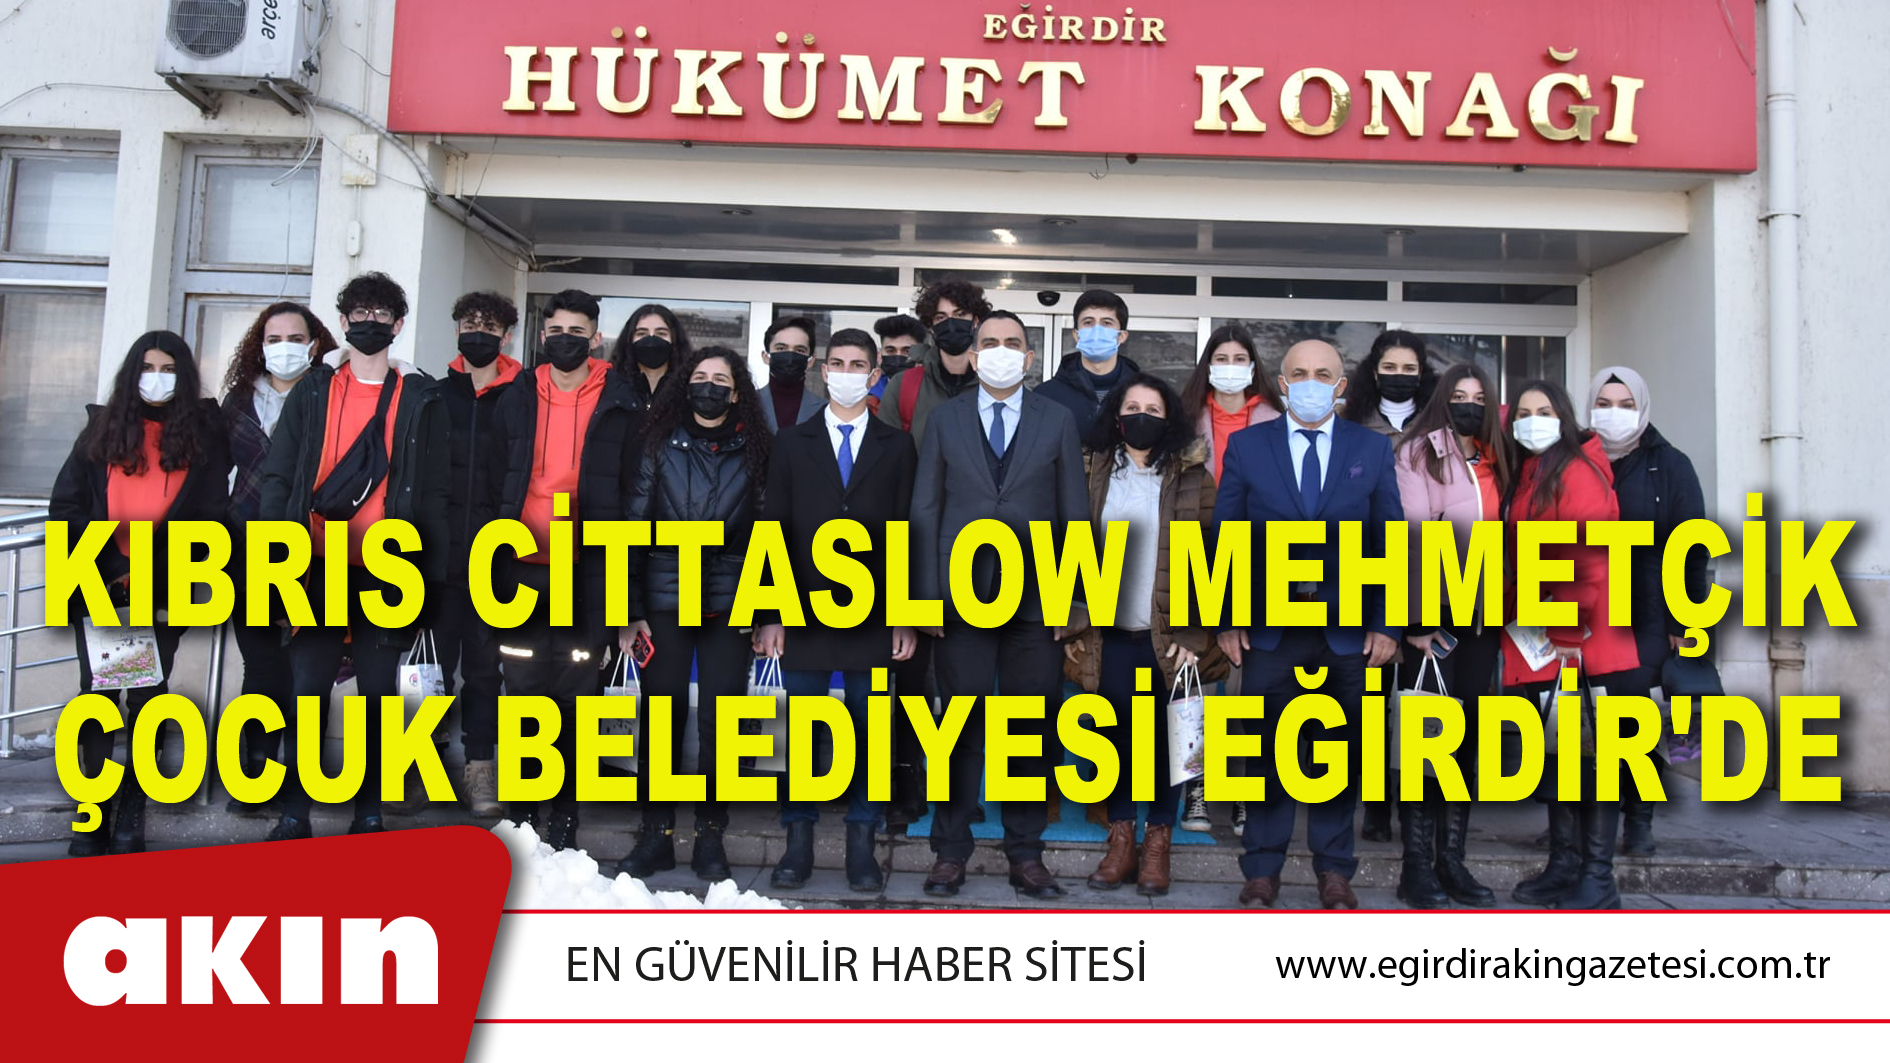 Kıbrıs Cittaslow Mehmetçik Çocuk Belediyesi Eğirdir'de